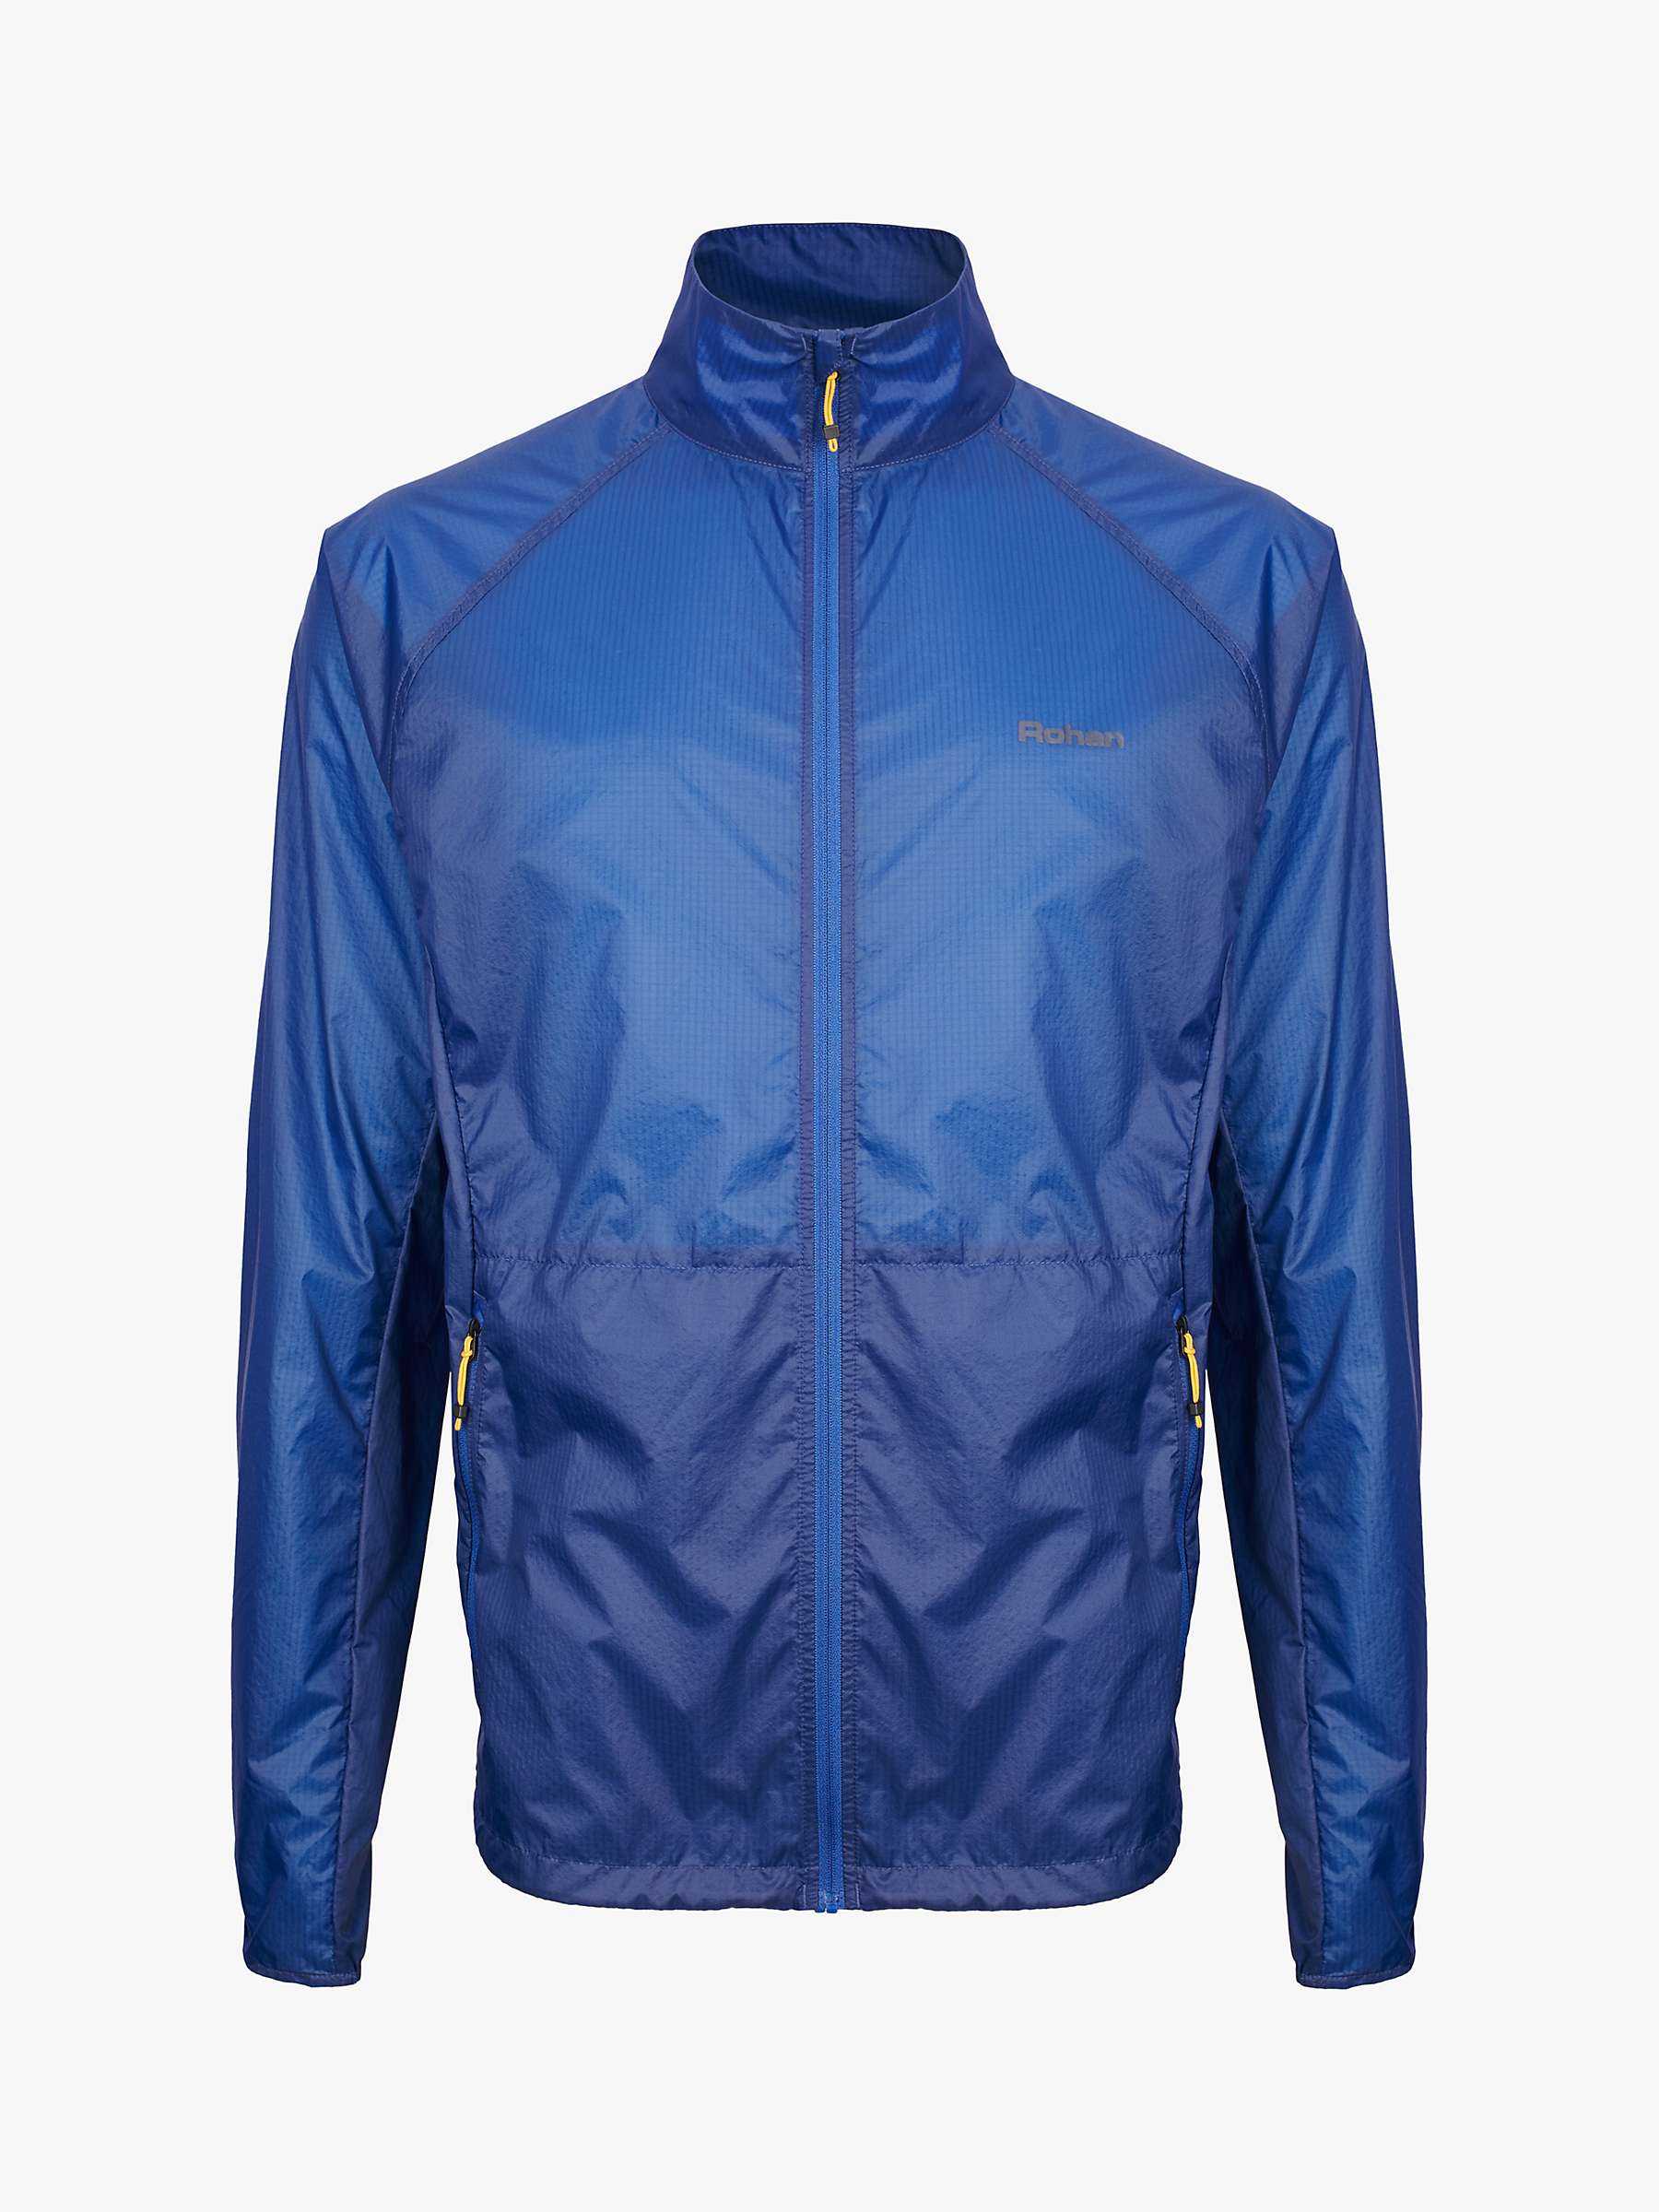 Buy Rohan Nimbus Men's Super Lightweight Windproof Jacket, Stratus Blue Online at johnlewis.com